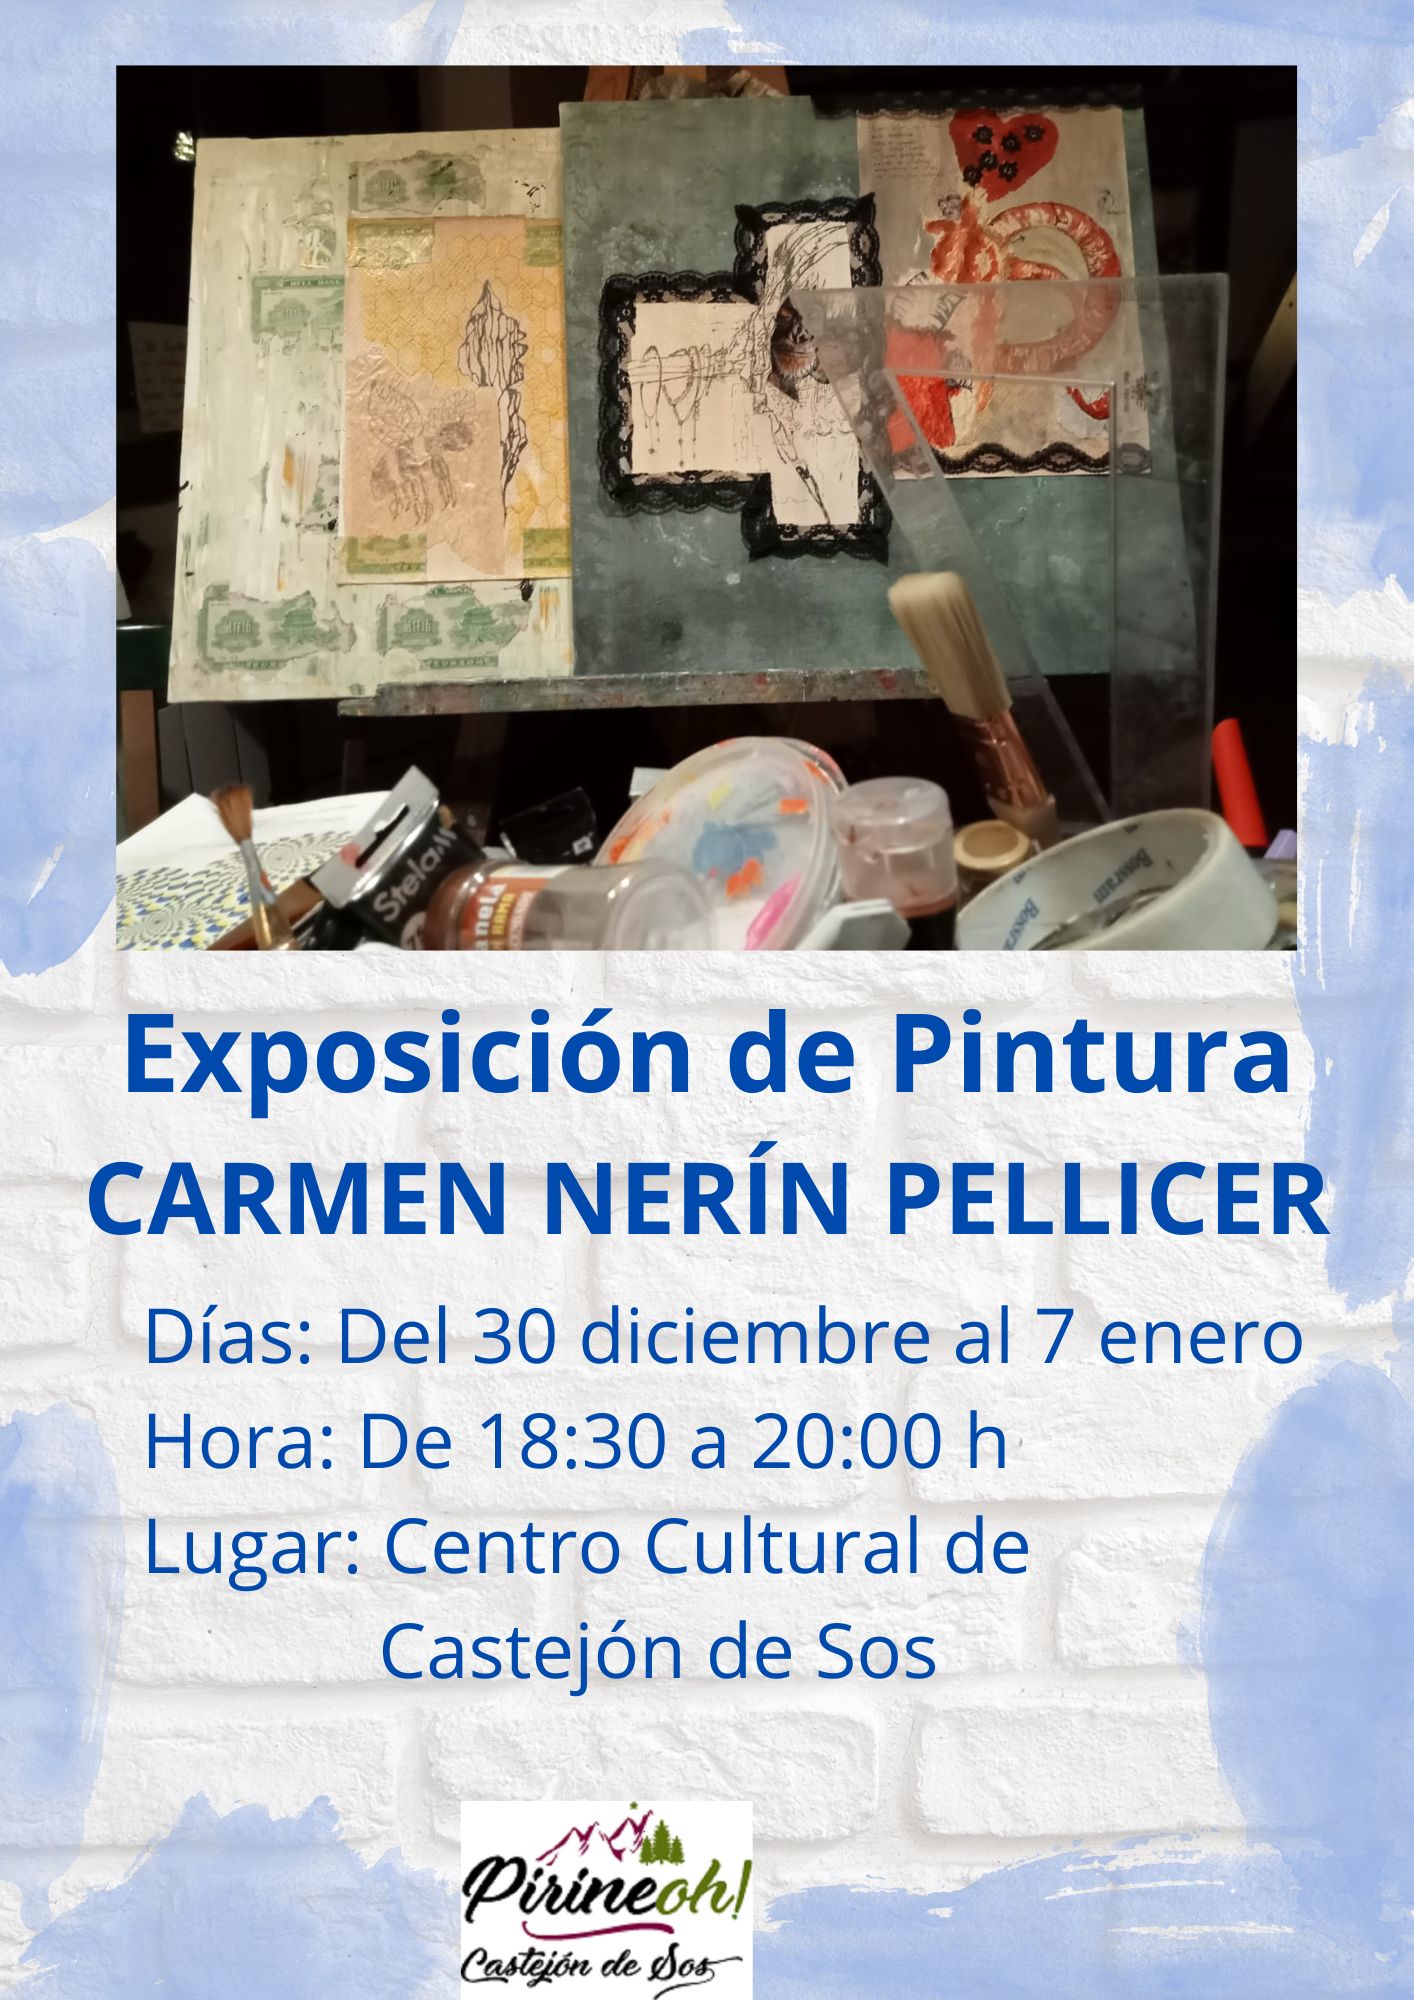 Exposicion de Pintura CARMEN NERIN PELLICER hasta 7 enero